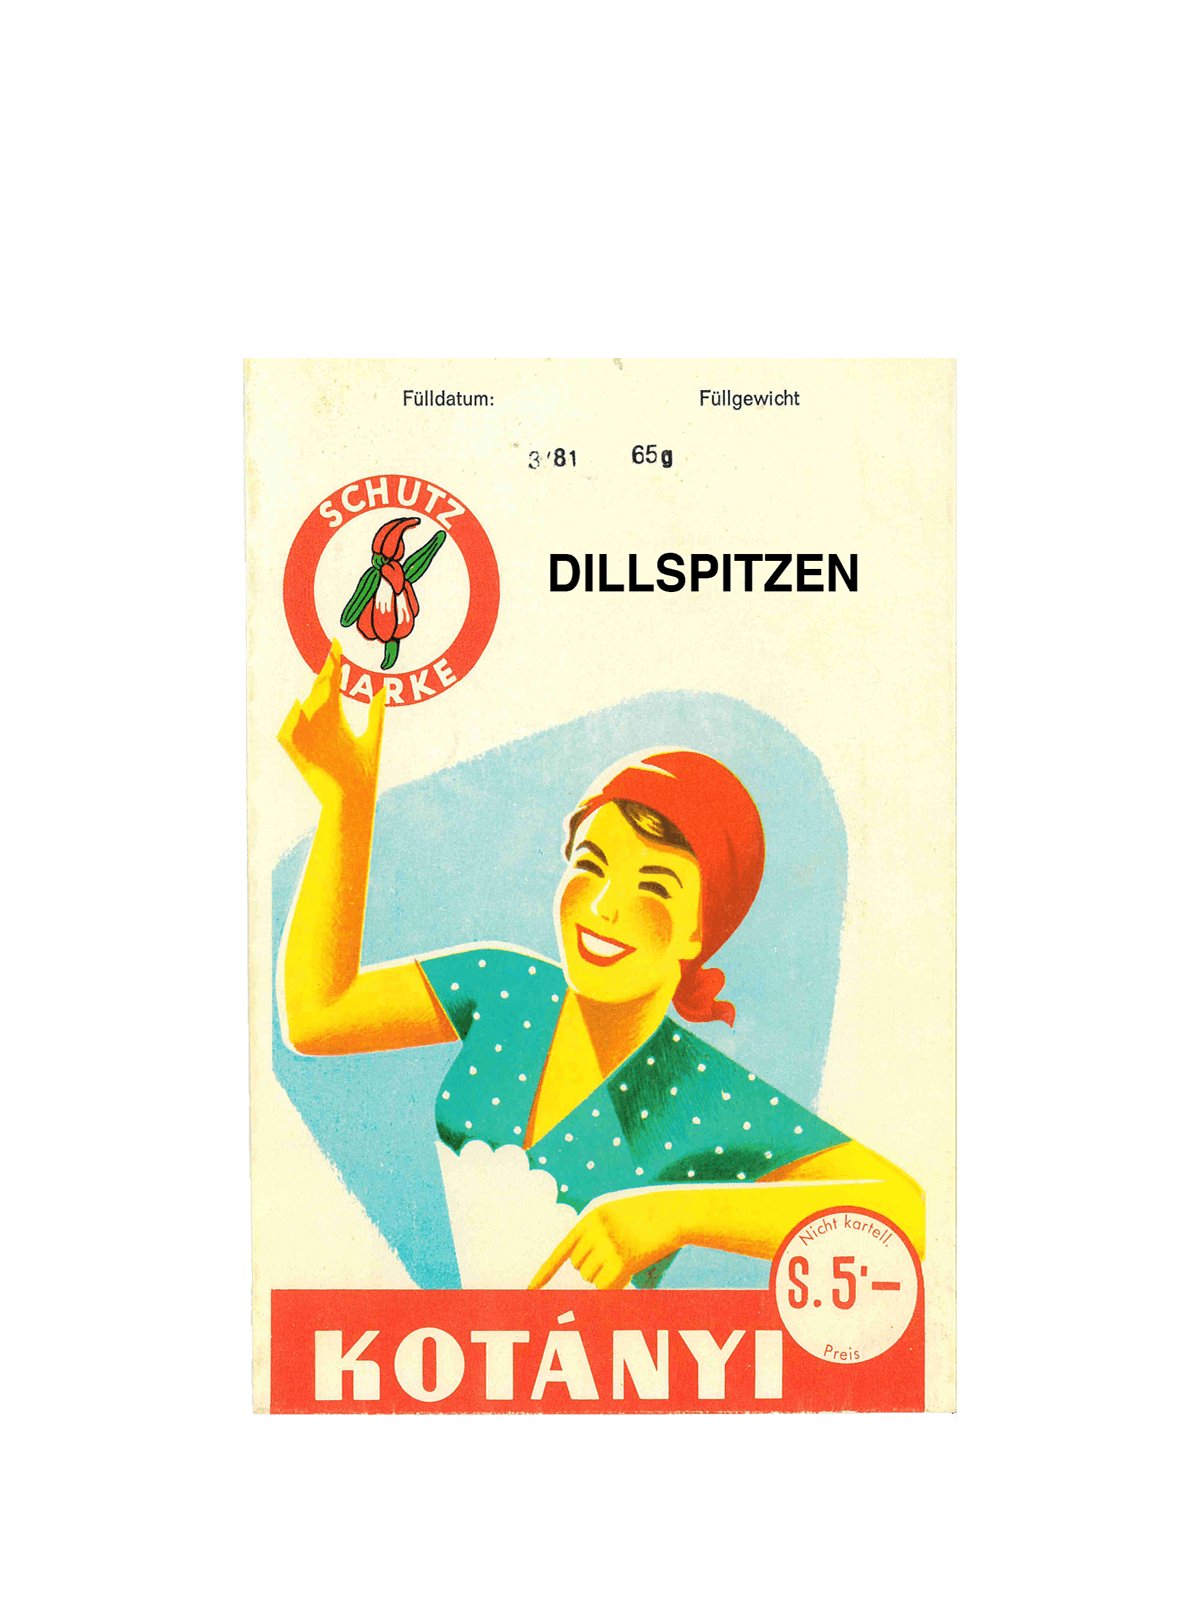 Eine Kotányi-Briefverpackung für Muskatnuss aus den 1950er Jahren